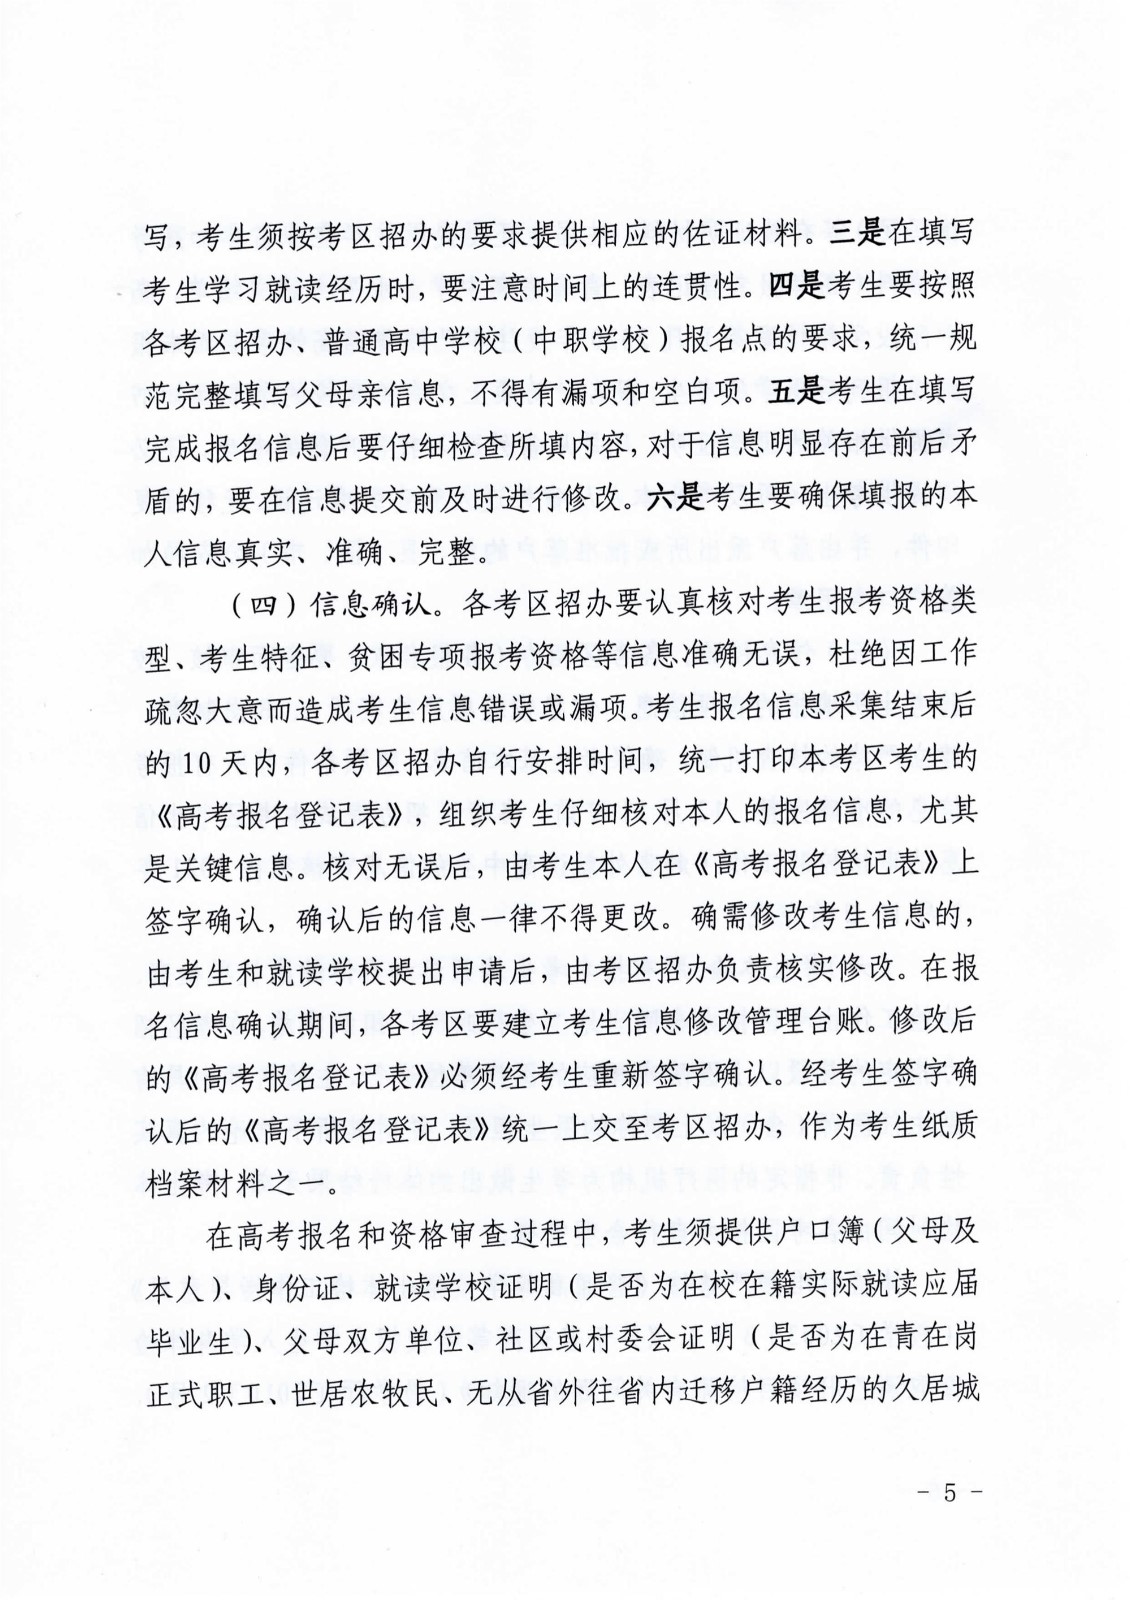 青海省高等学校招生委员会关于做好2021年普通高考报名工作的通知